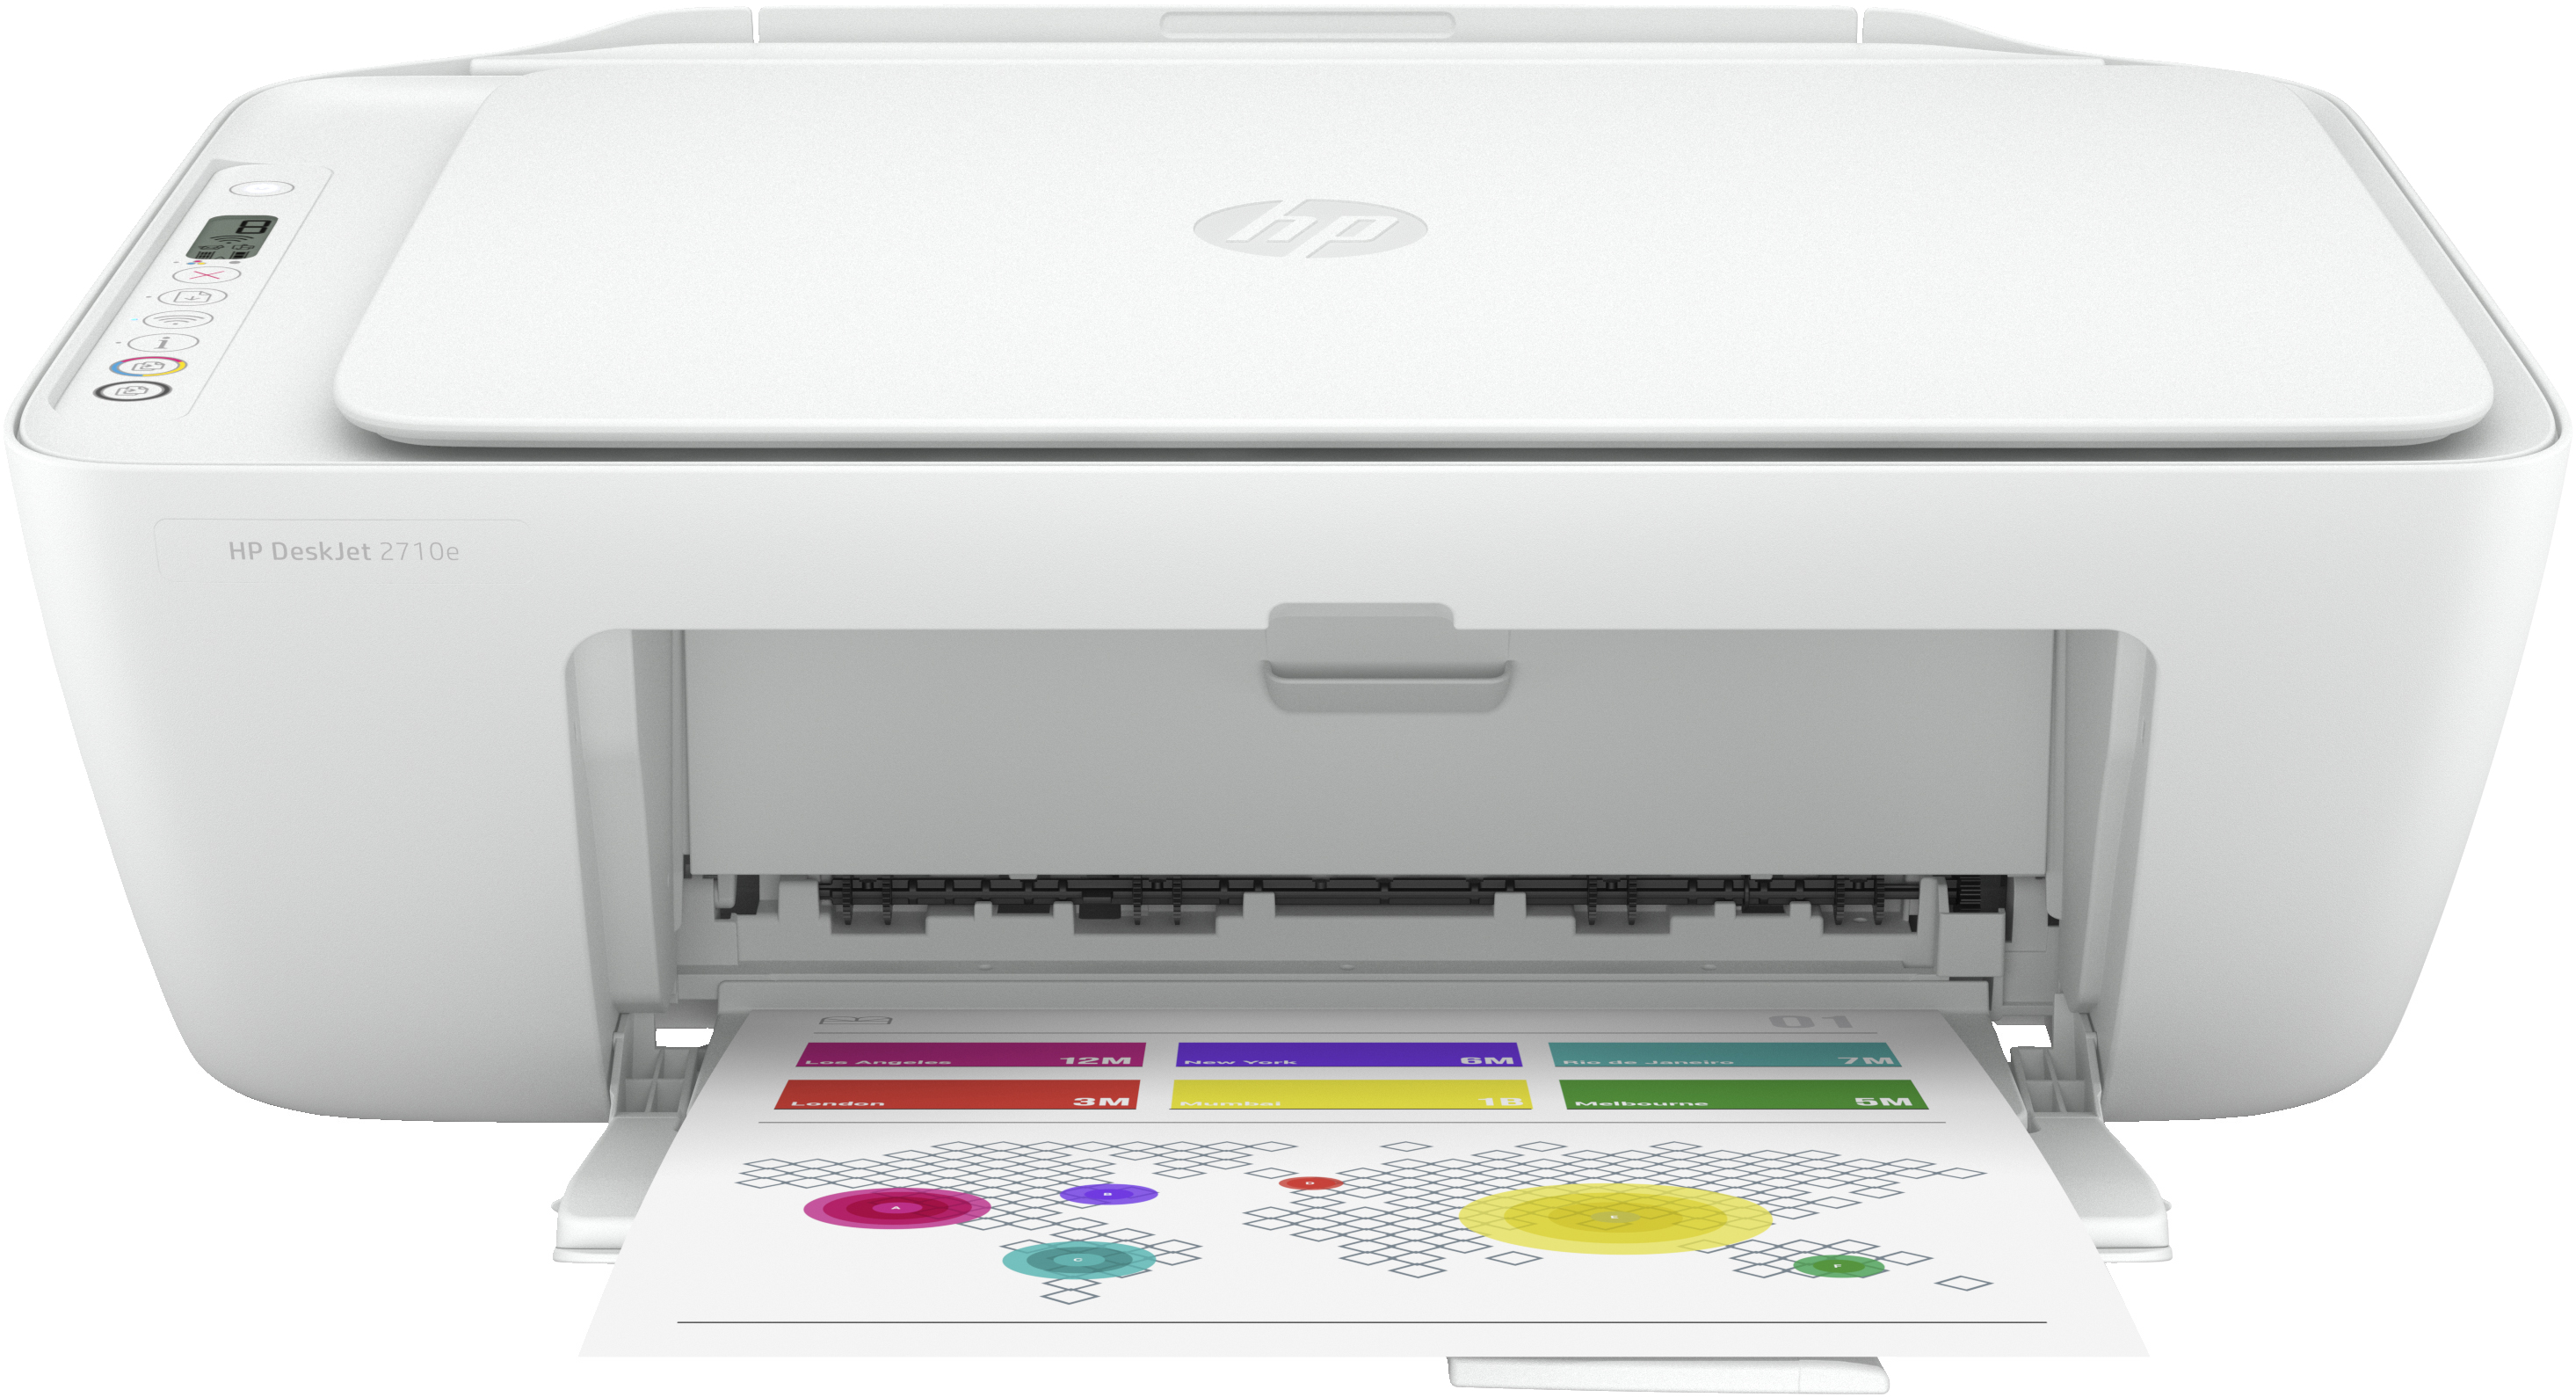 HP DeskJet Stampante multifunzione HP 2710e, Colore, Stampante per Casa,  Stampa, copia, scansione, wireless; HP+; idonea a HP Instant Ink; stampa da